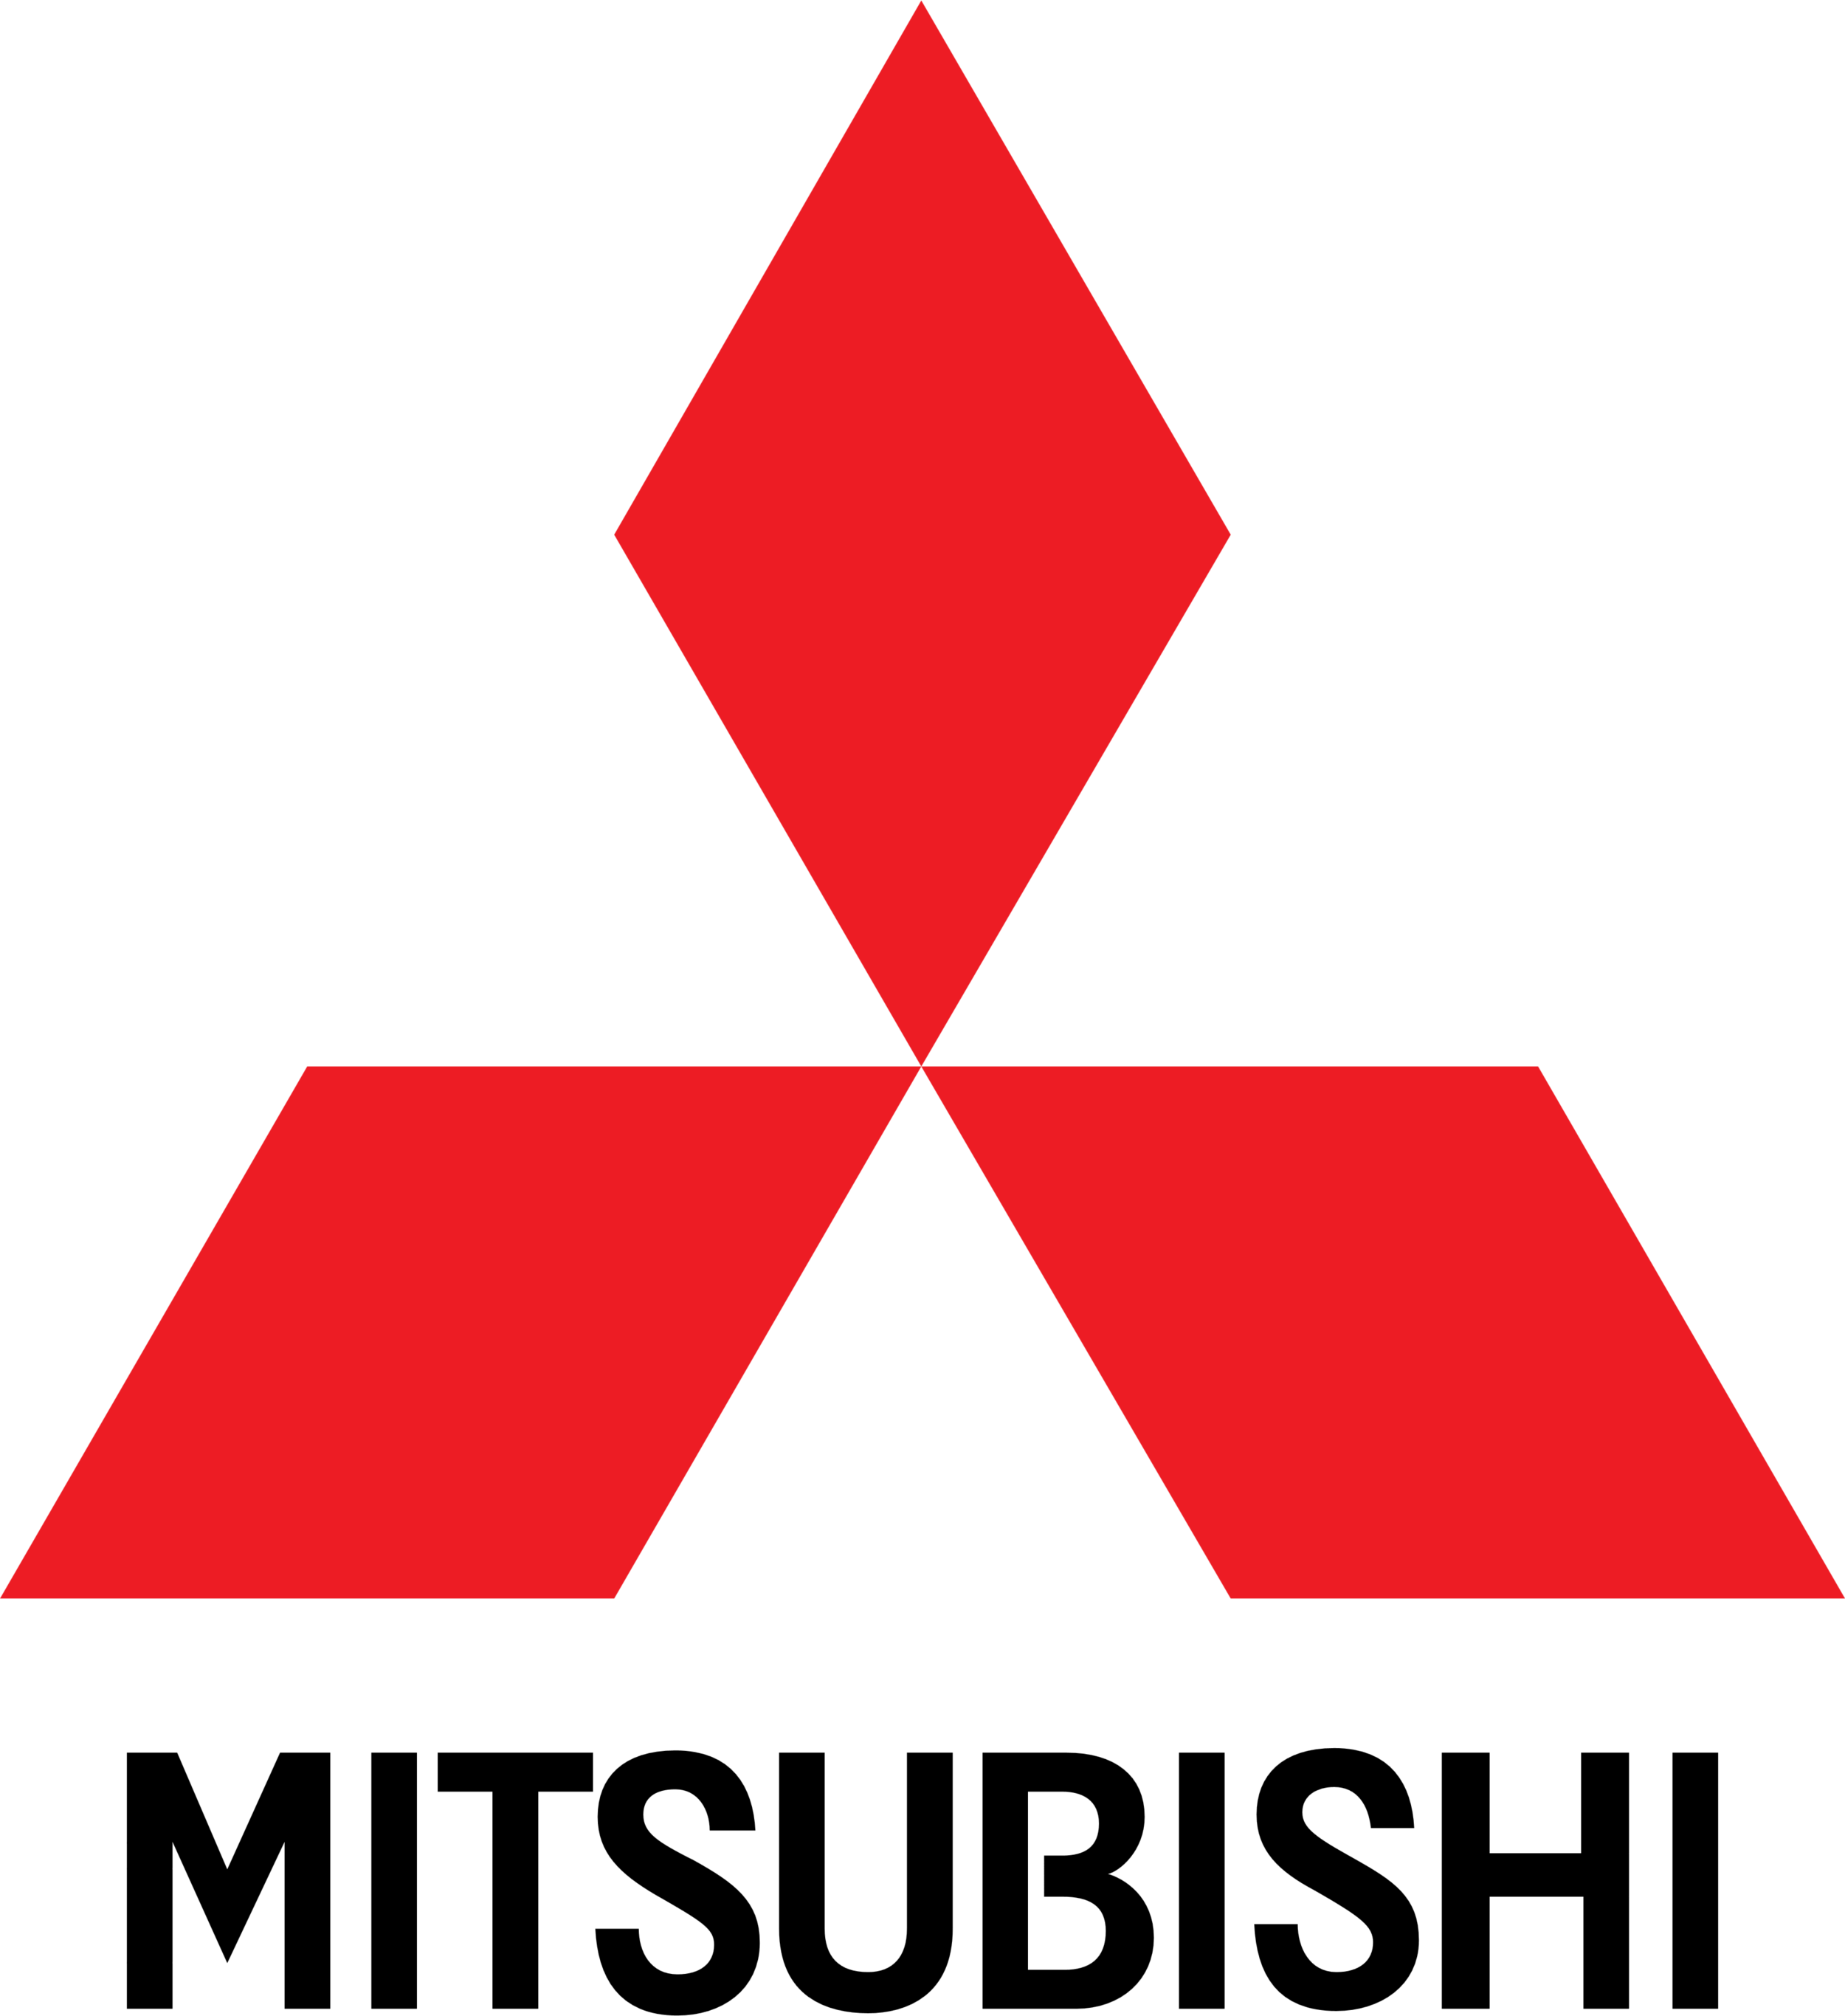 Mitsubishi_logo_standart.png